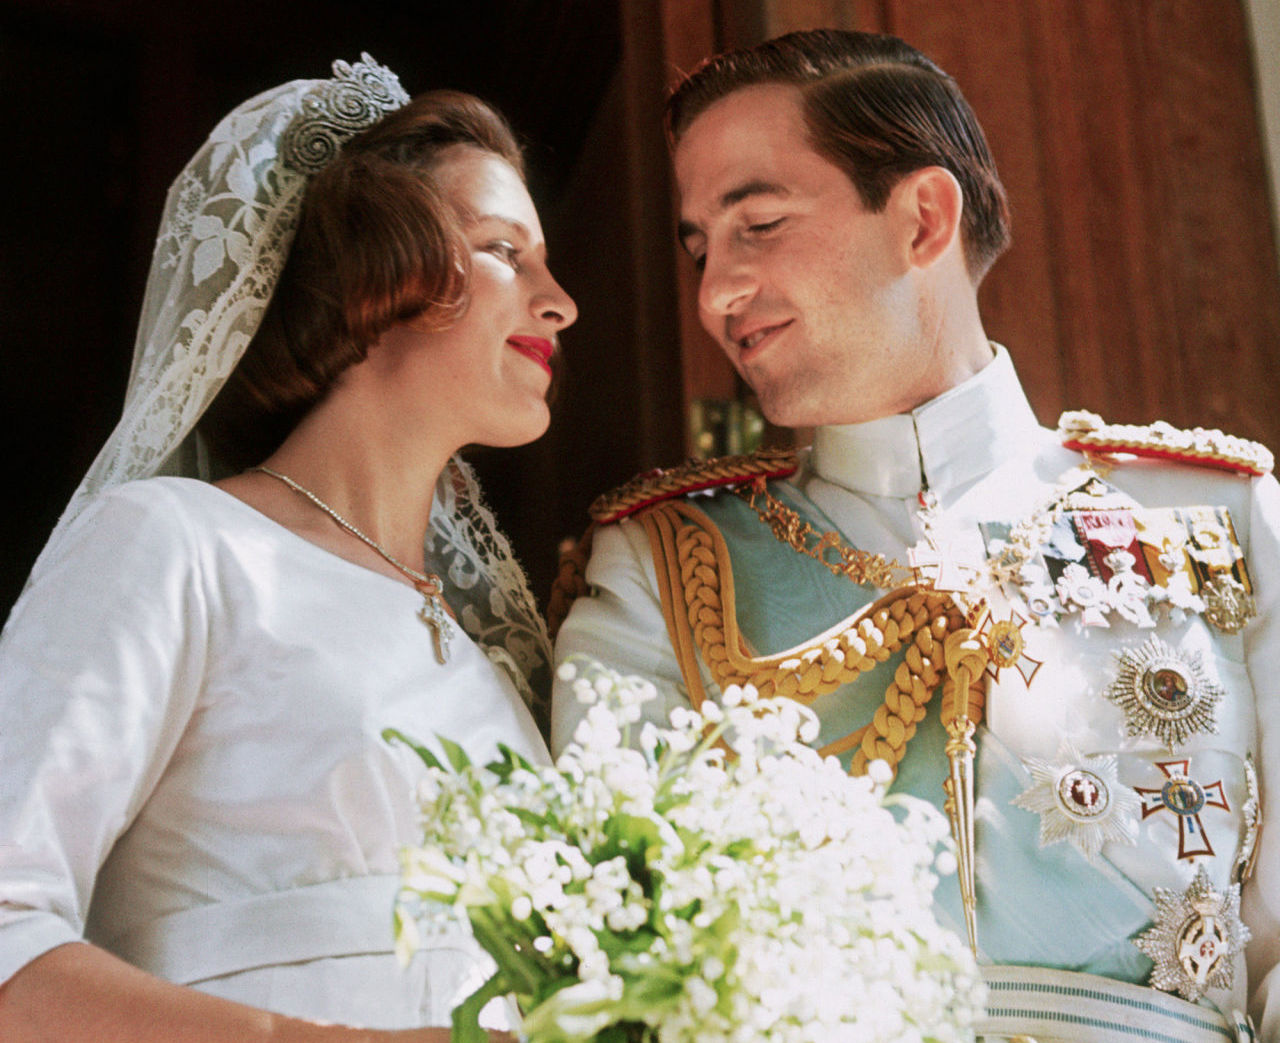 Σεπτέμβριος 1964: Ο ονειρεμένος γάμος του τέως βασιλιά Κωνσταντίνου και της Δανής πριγκίπισσας Άννας-Μαρίας (βίντεο)